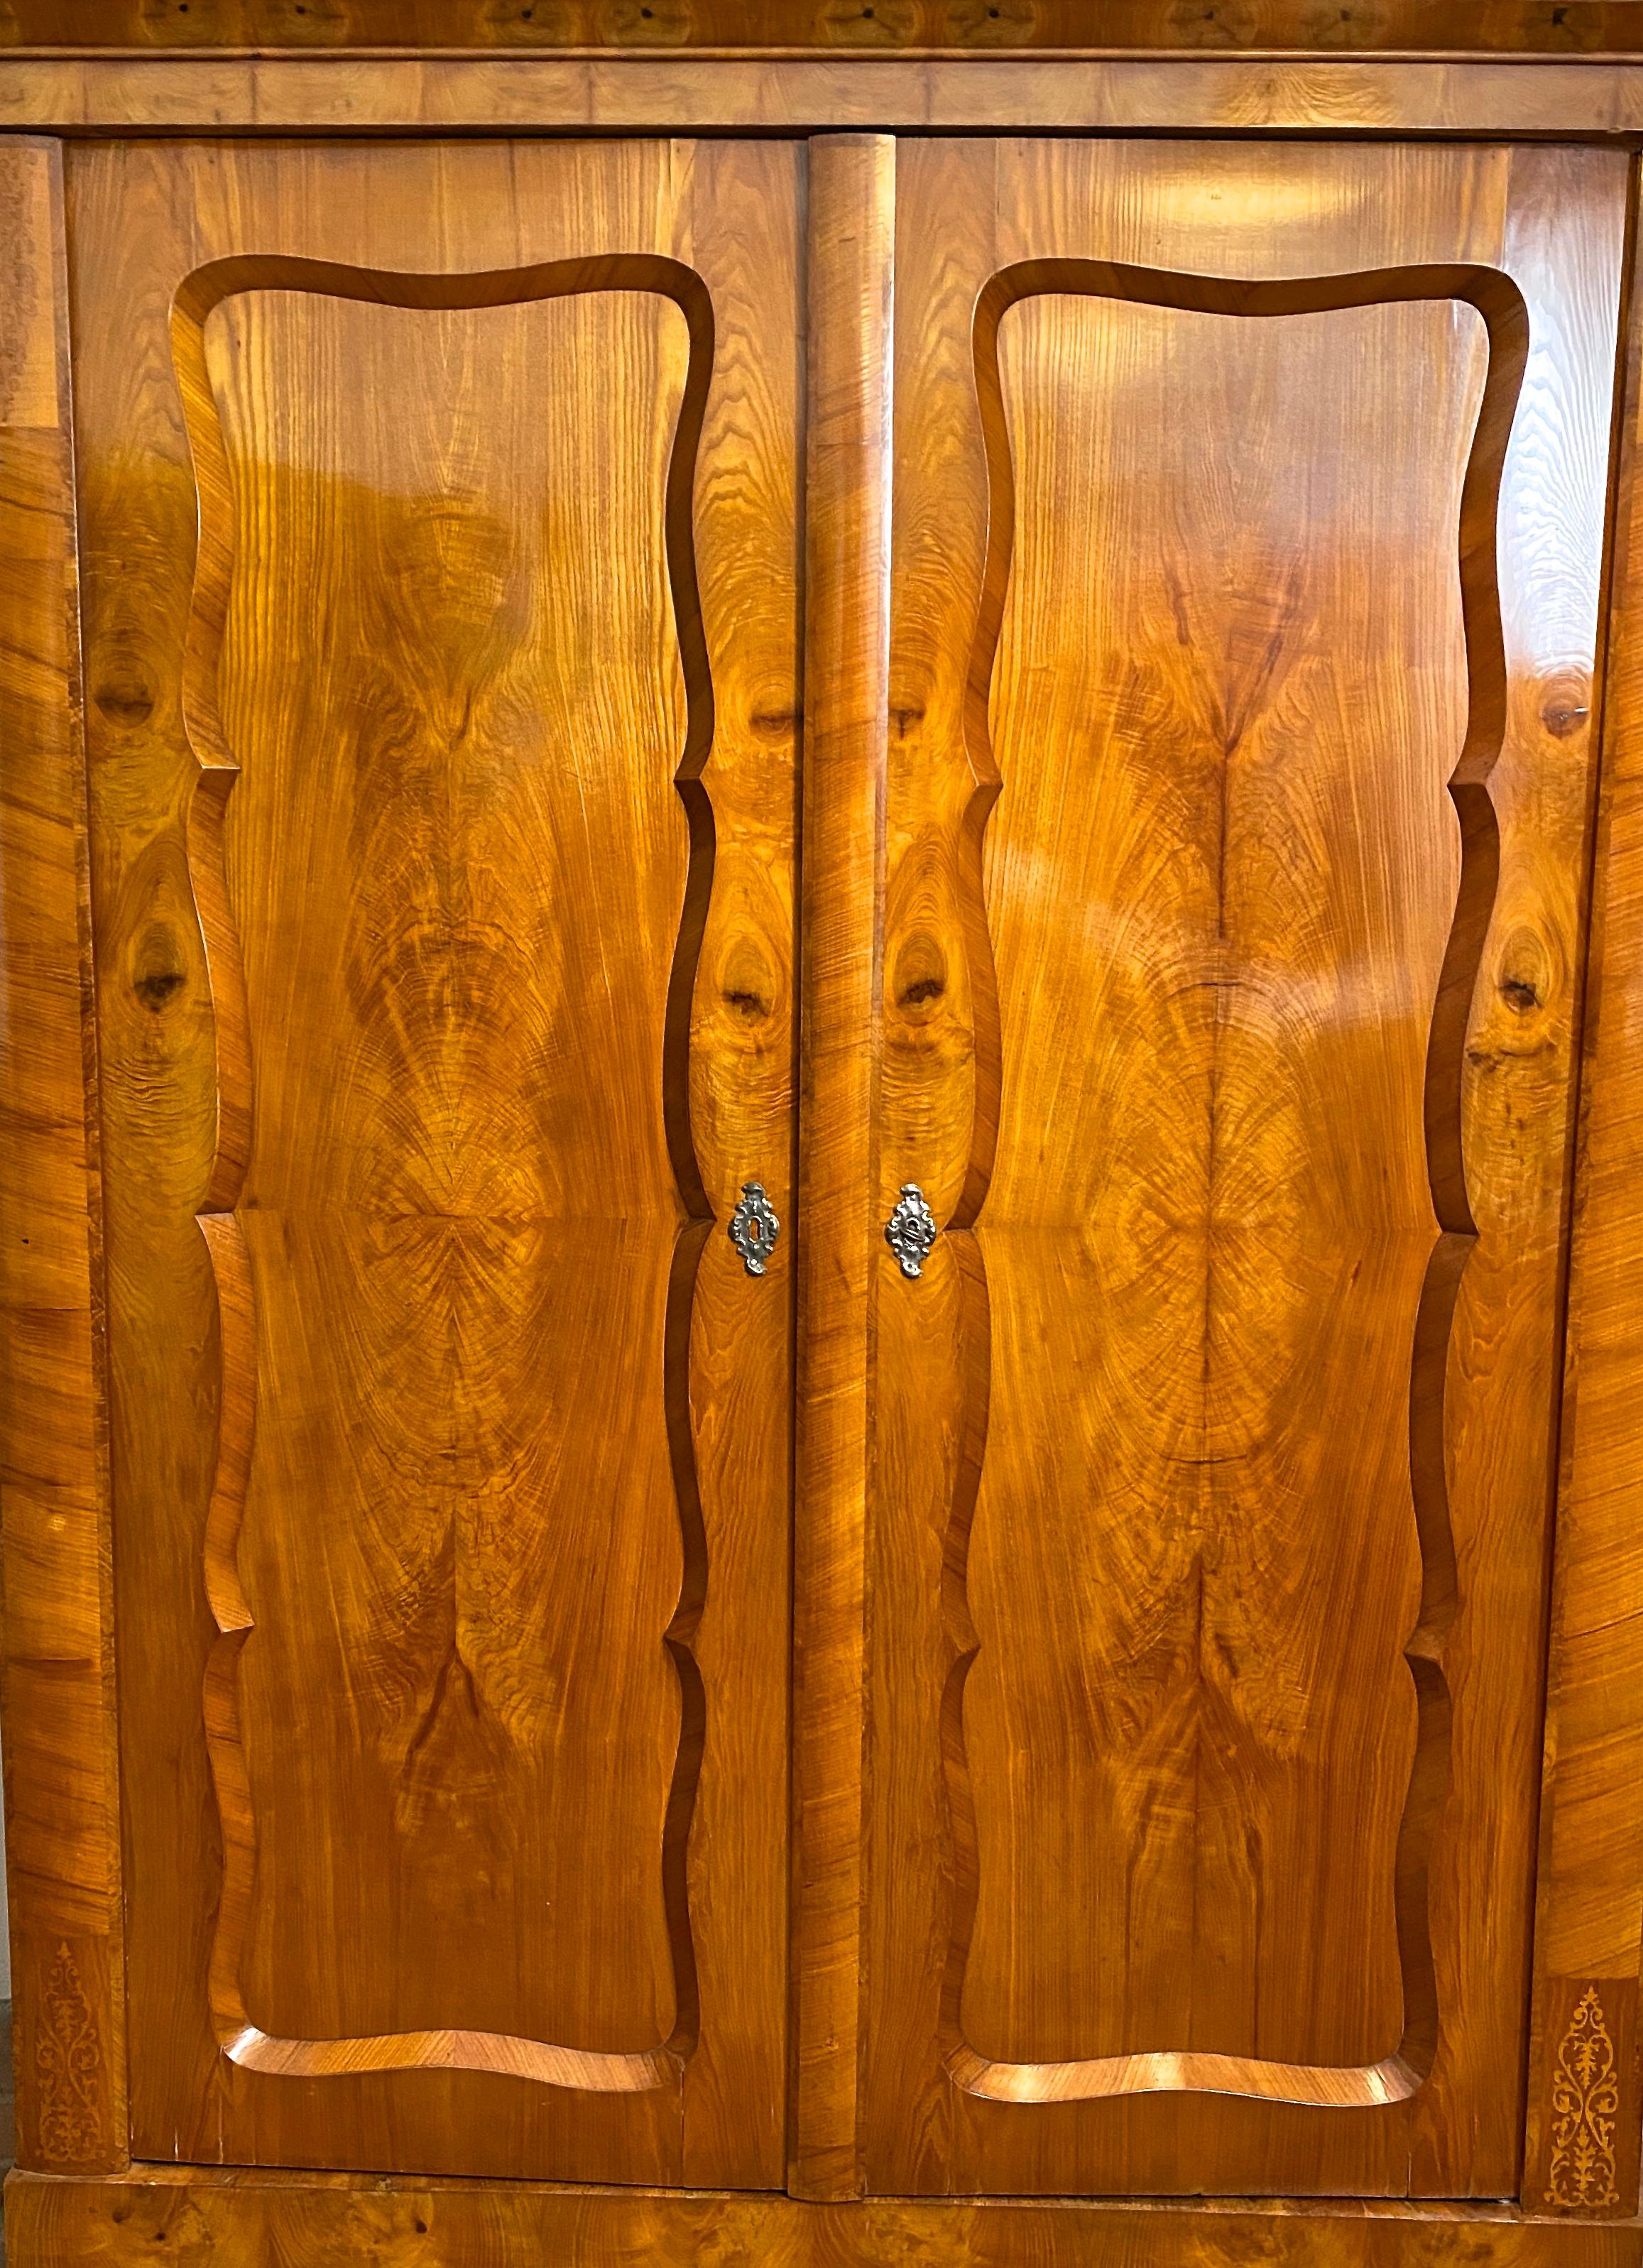 Remarquable et rare armoire autrichienne Biedermeier en bois de frêne, fabriquée à la main vers 1840. Le corps en épicéa massif est recouvert d'un placage de frêne très épais au grain magnifique, embelli par de fantastiques incrustations sur le